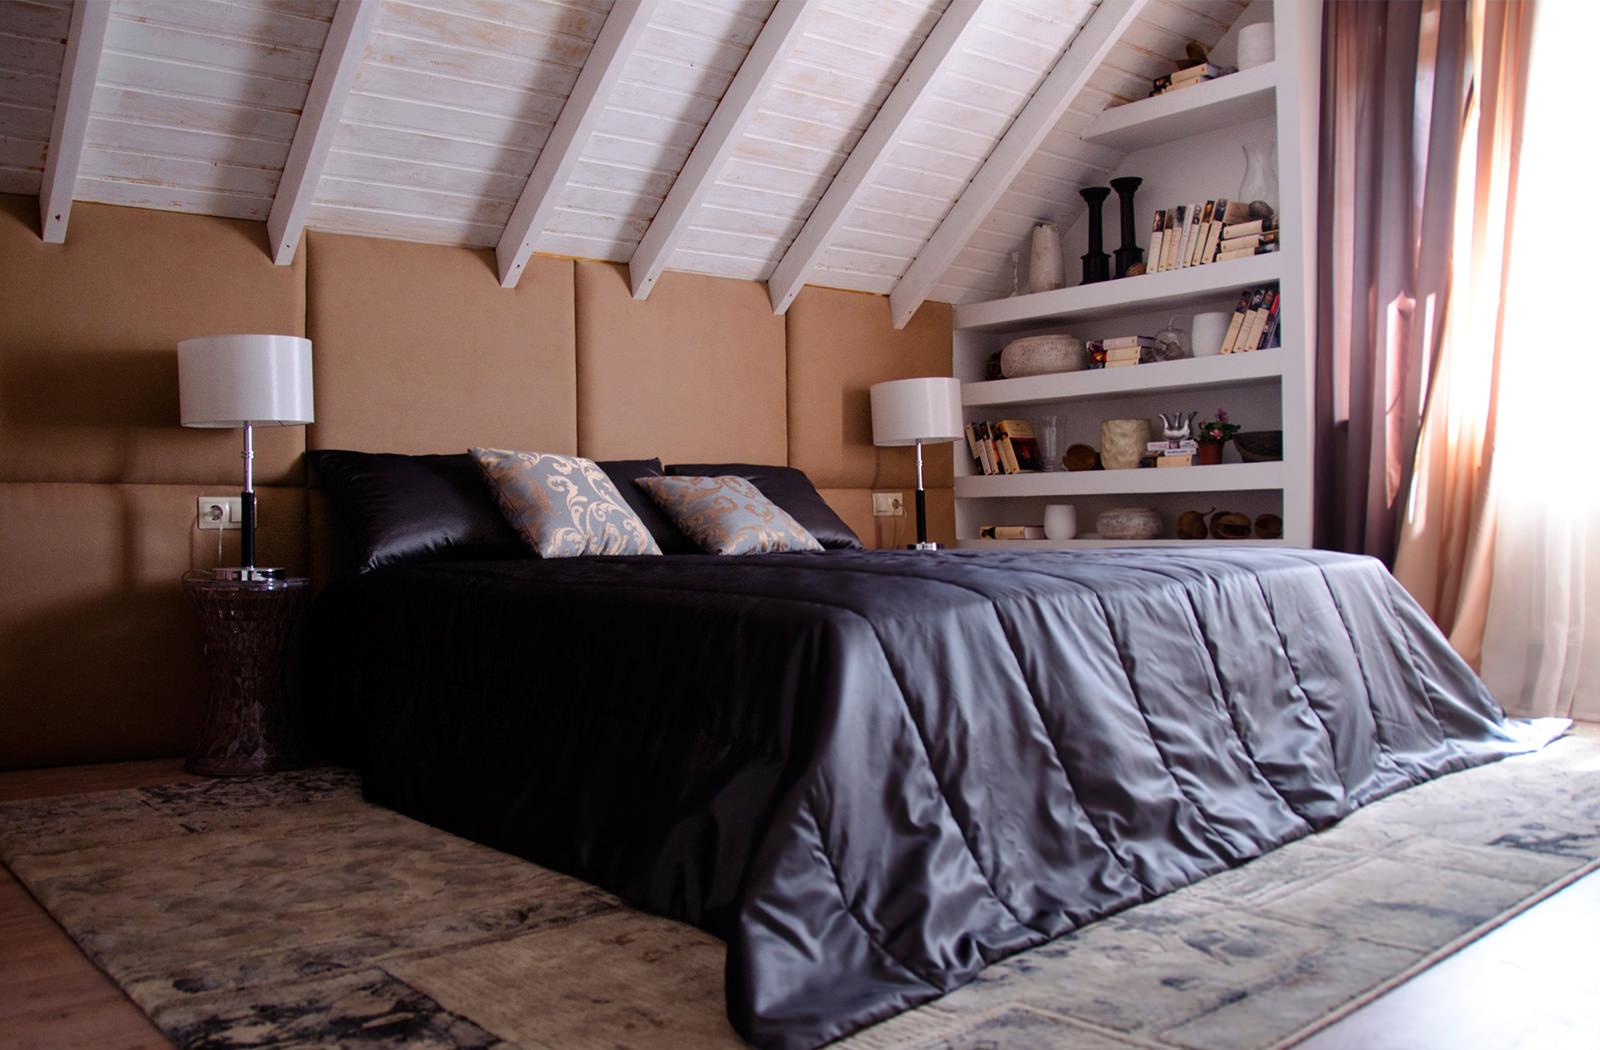 Черный, белый и коричневый цвета в интерьере спальни 16 кв м